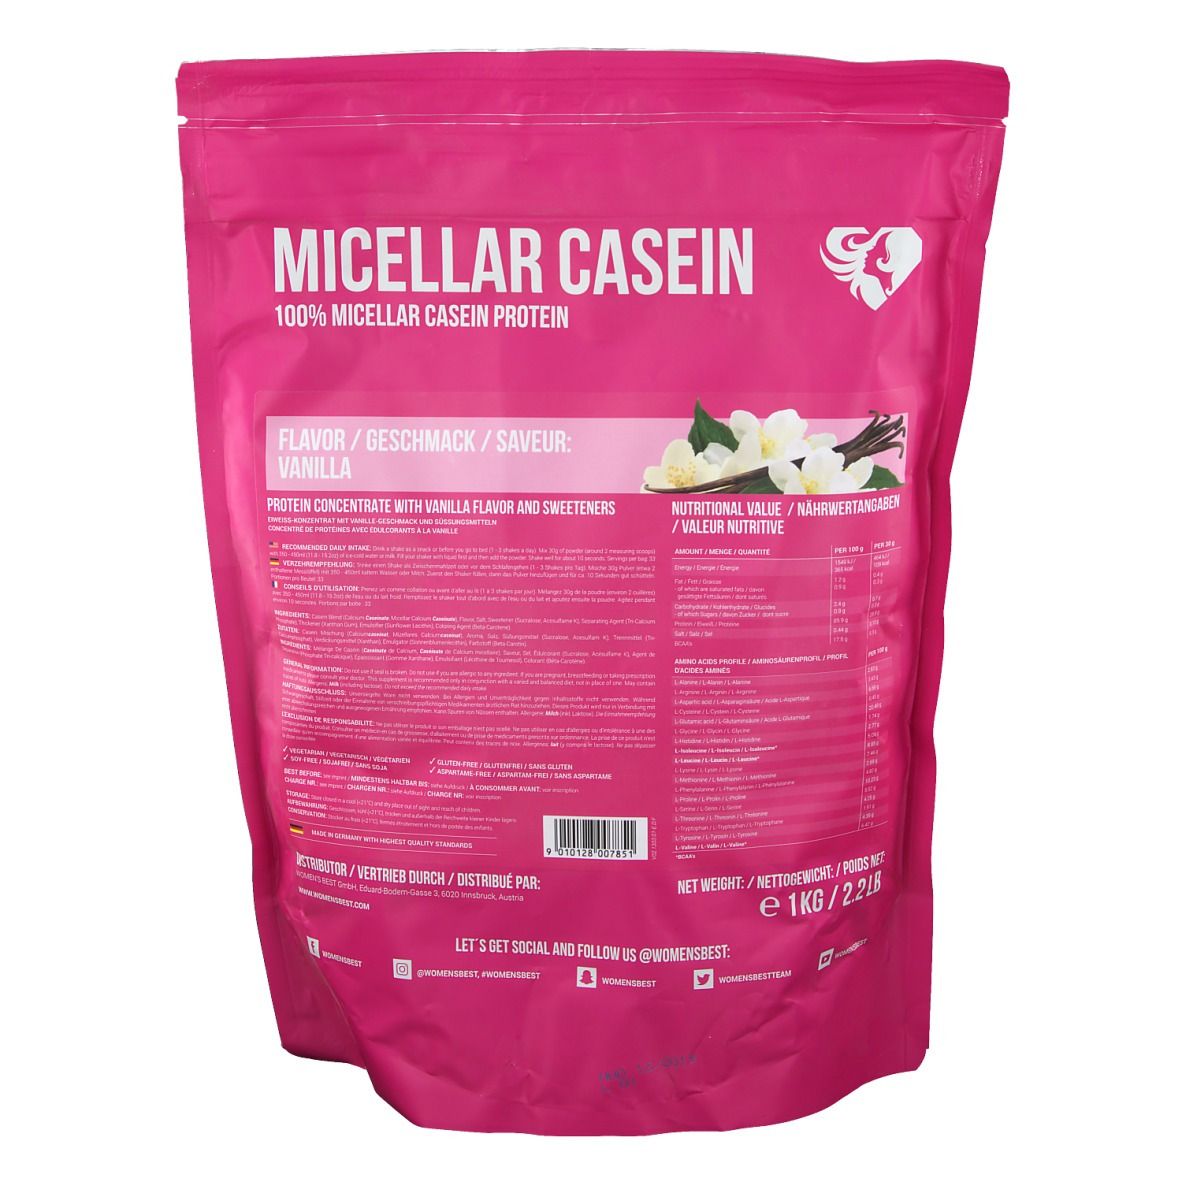 WOMEN`S BEST Micellar Casein Protein Vanille